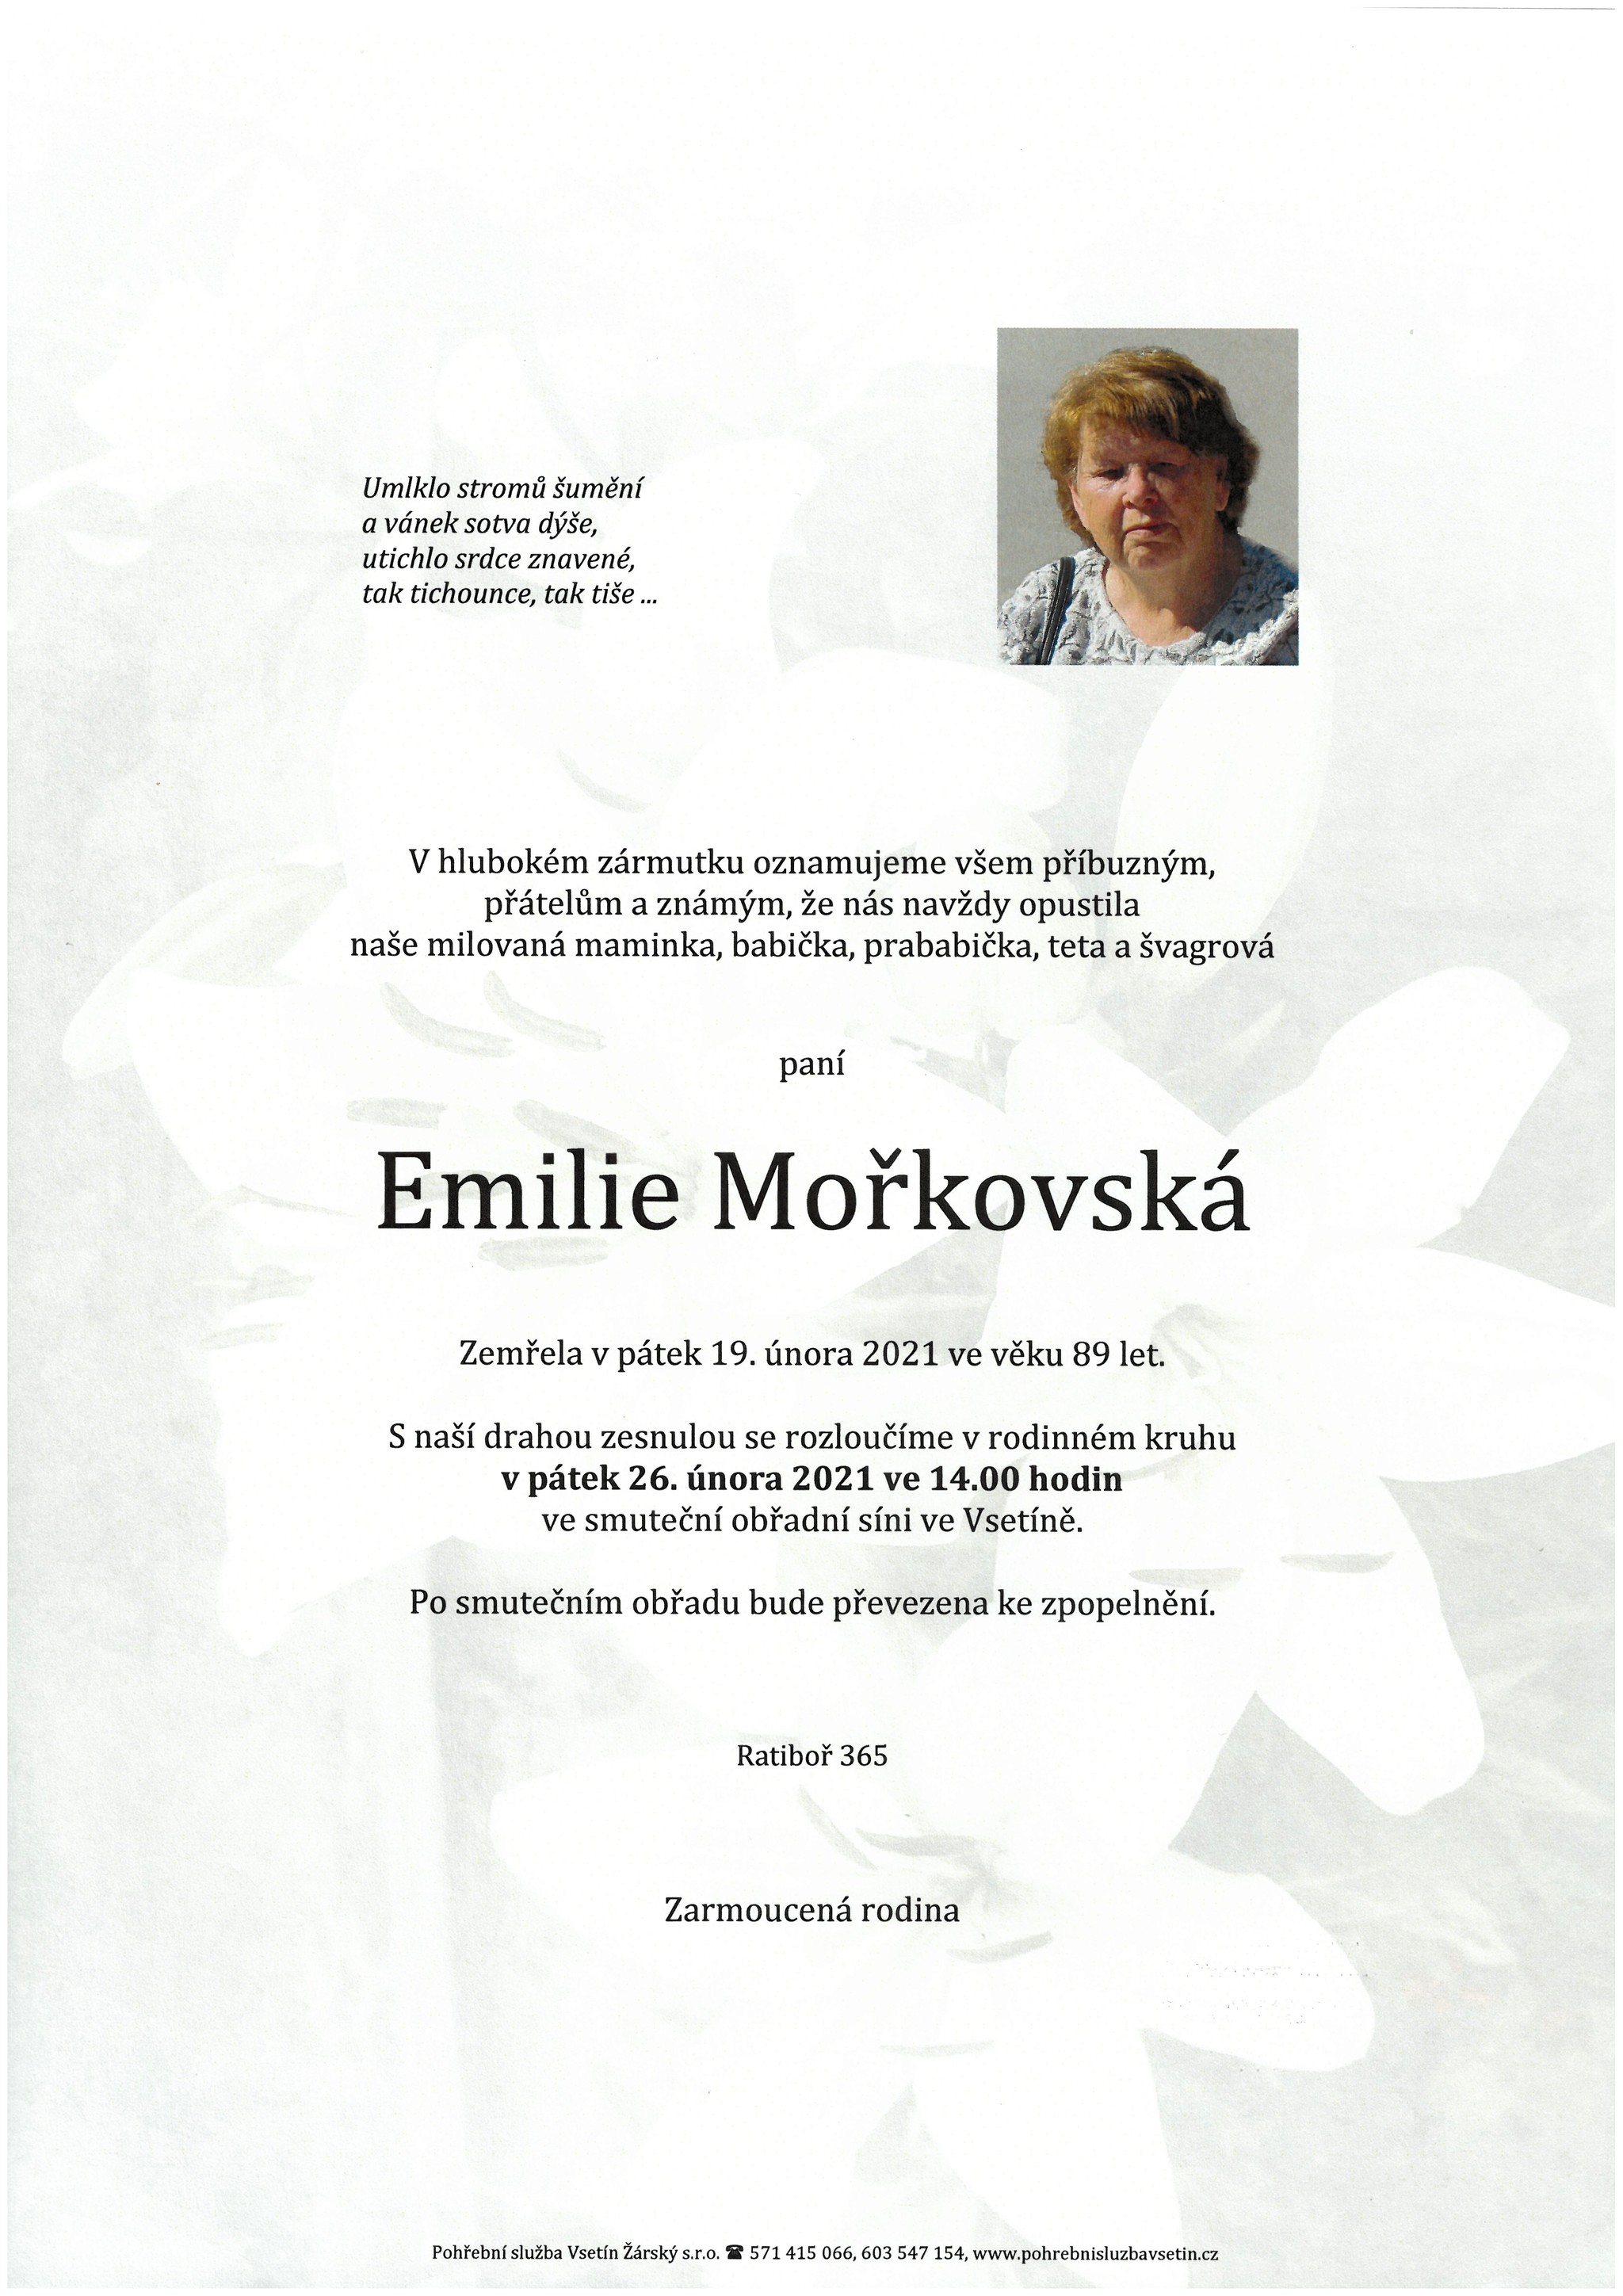 Emilie Mořkovská